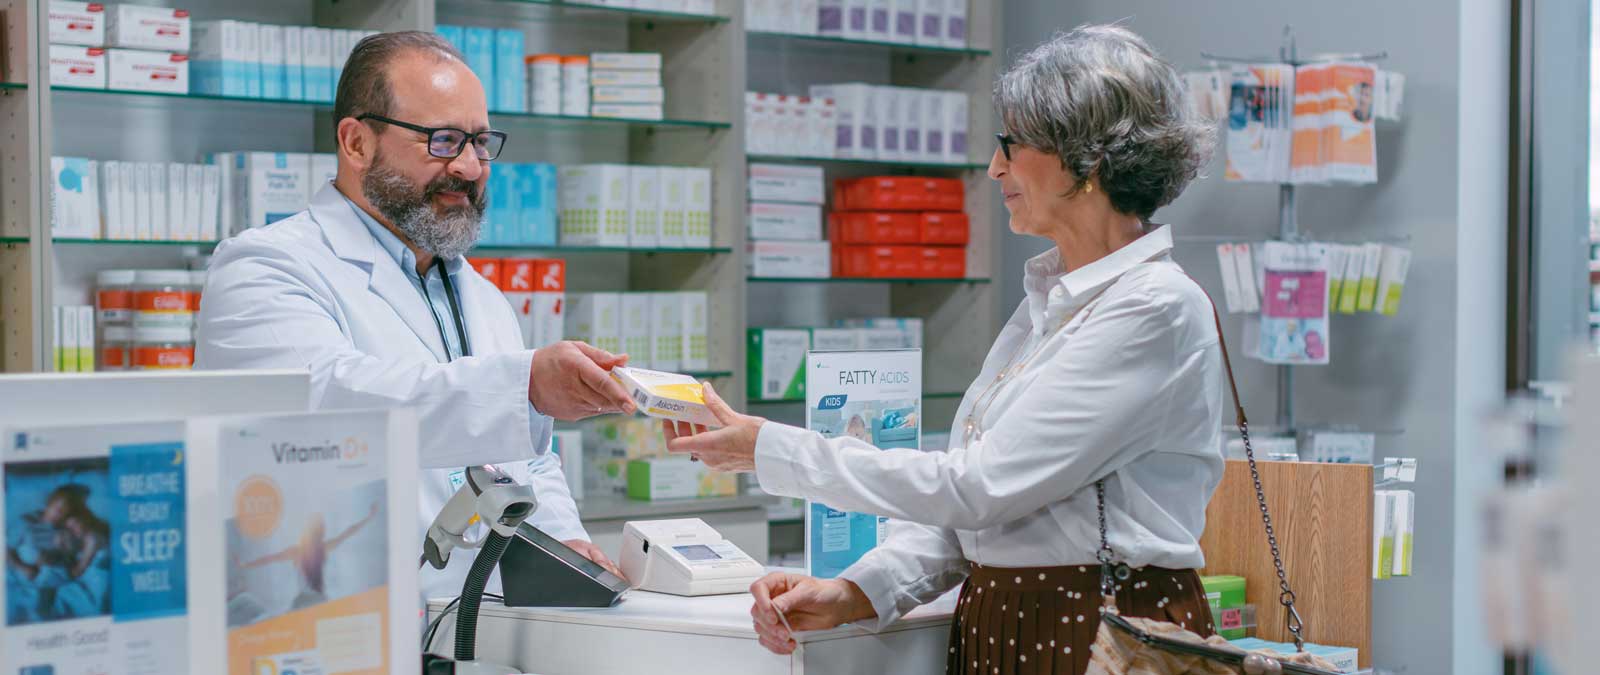 Farmacéutico entregando una caja de medicamentos a una mujer en el mostrador de una farmacia.